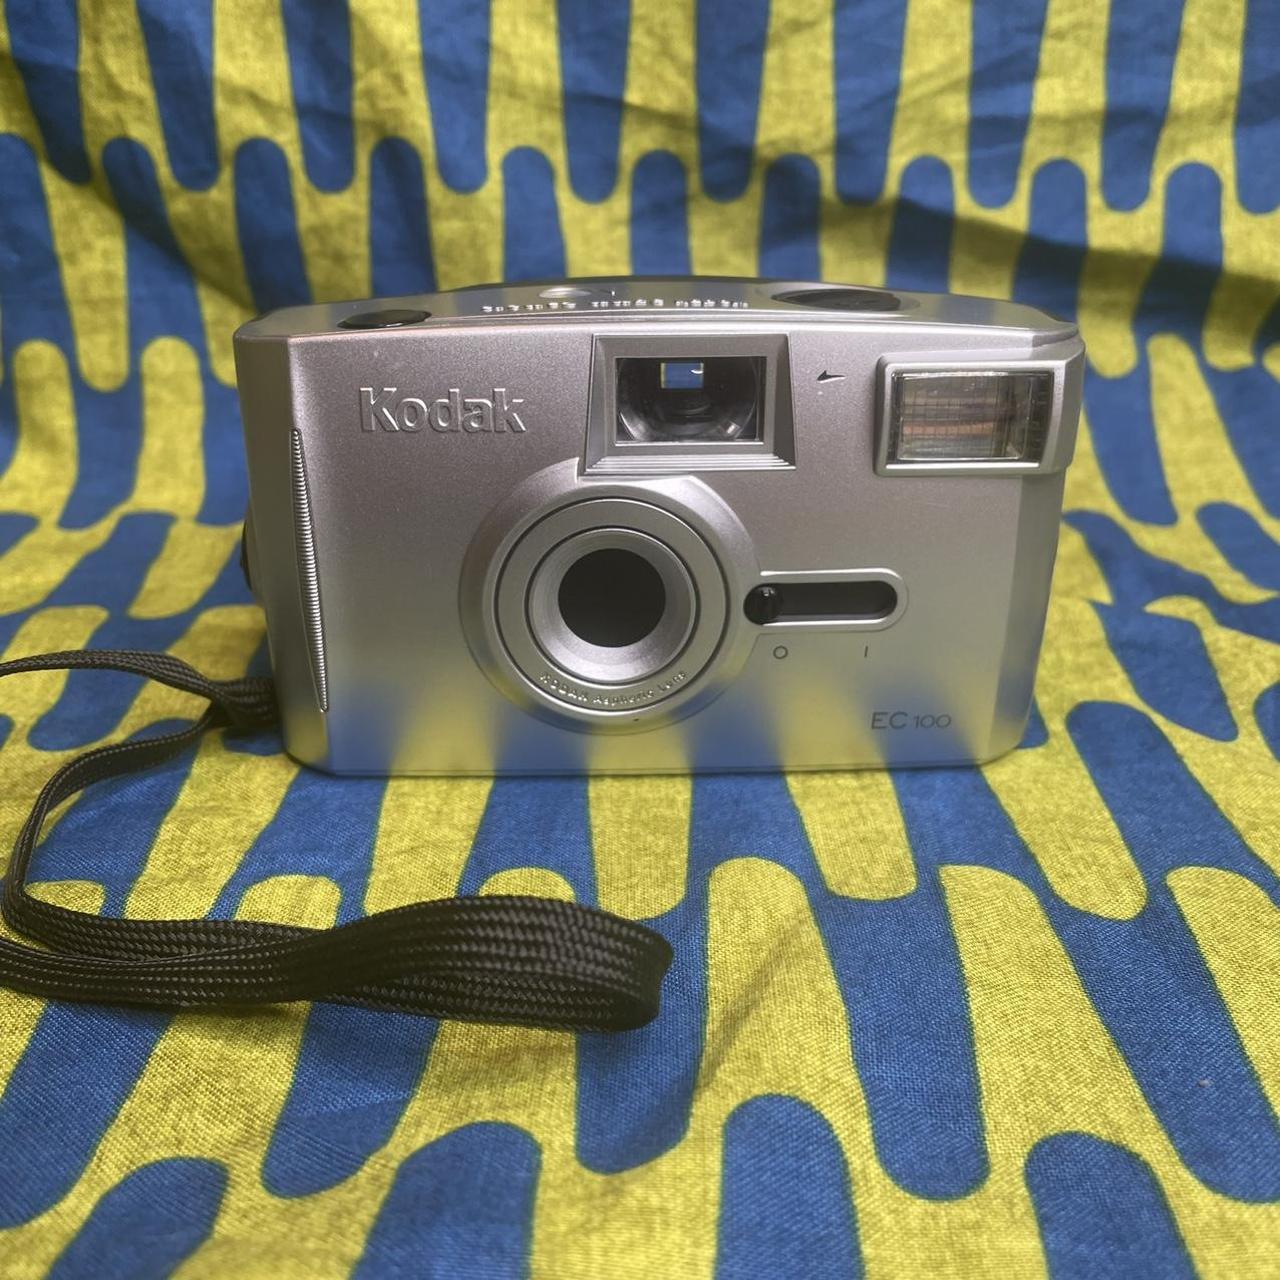 Product Image 1 - Kodak EC 100 - 35mm